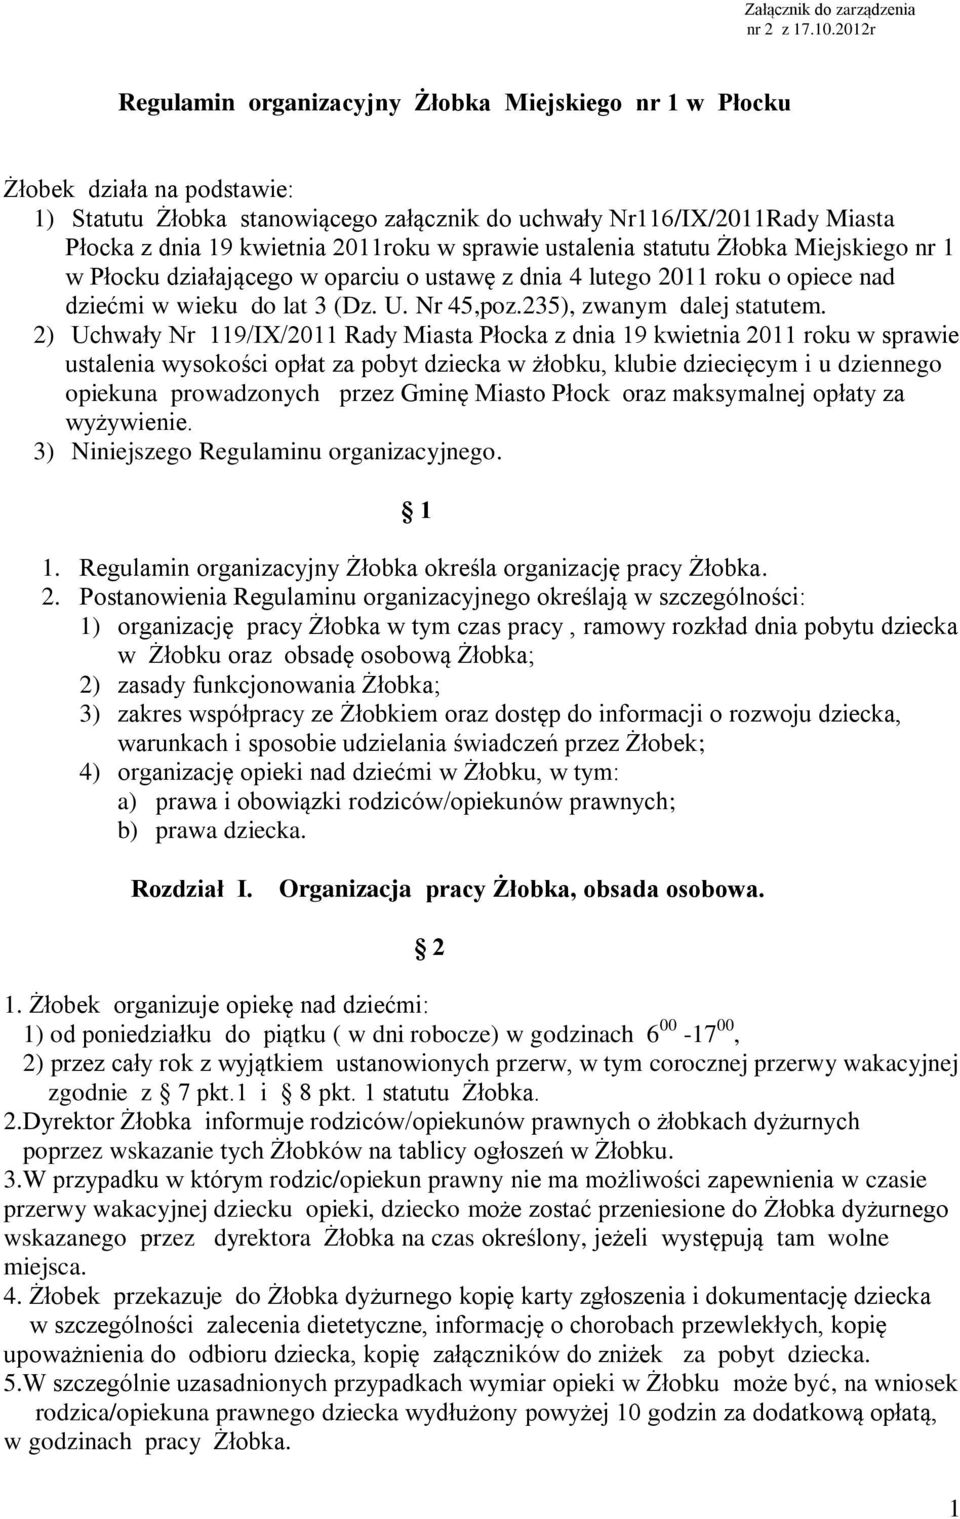 2011roku w sprawie ustalenia statutu Żłobka Miejskiego nr 1 w Płocku działającego w oparciu o ustawę z dnia 4 lutego 2011 roku o opiece nad dziećmi w wieku do lat 3 (Dz. U. Nr 45,poz.